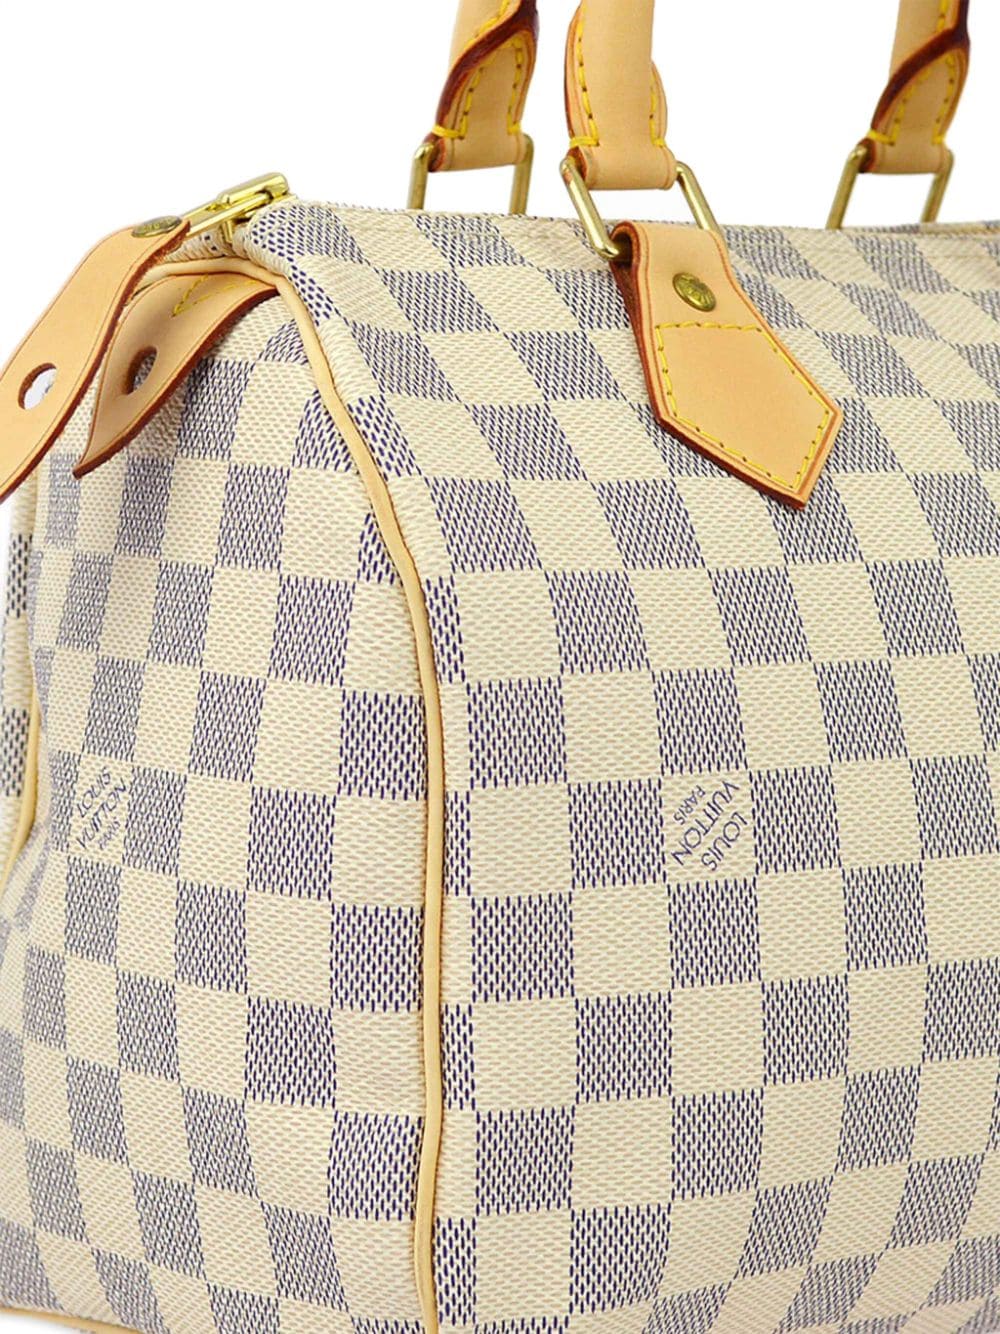 Pre-owned Louis Vuitton 2007 Speedy 25 Handbag In Neutrals